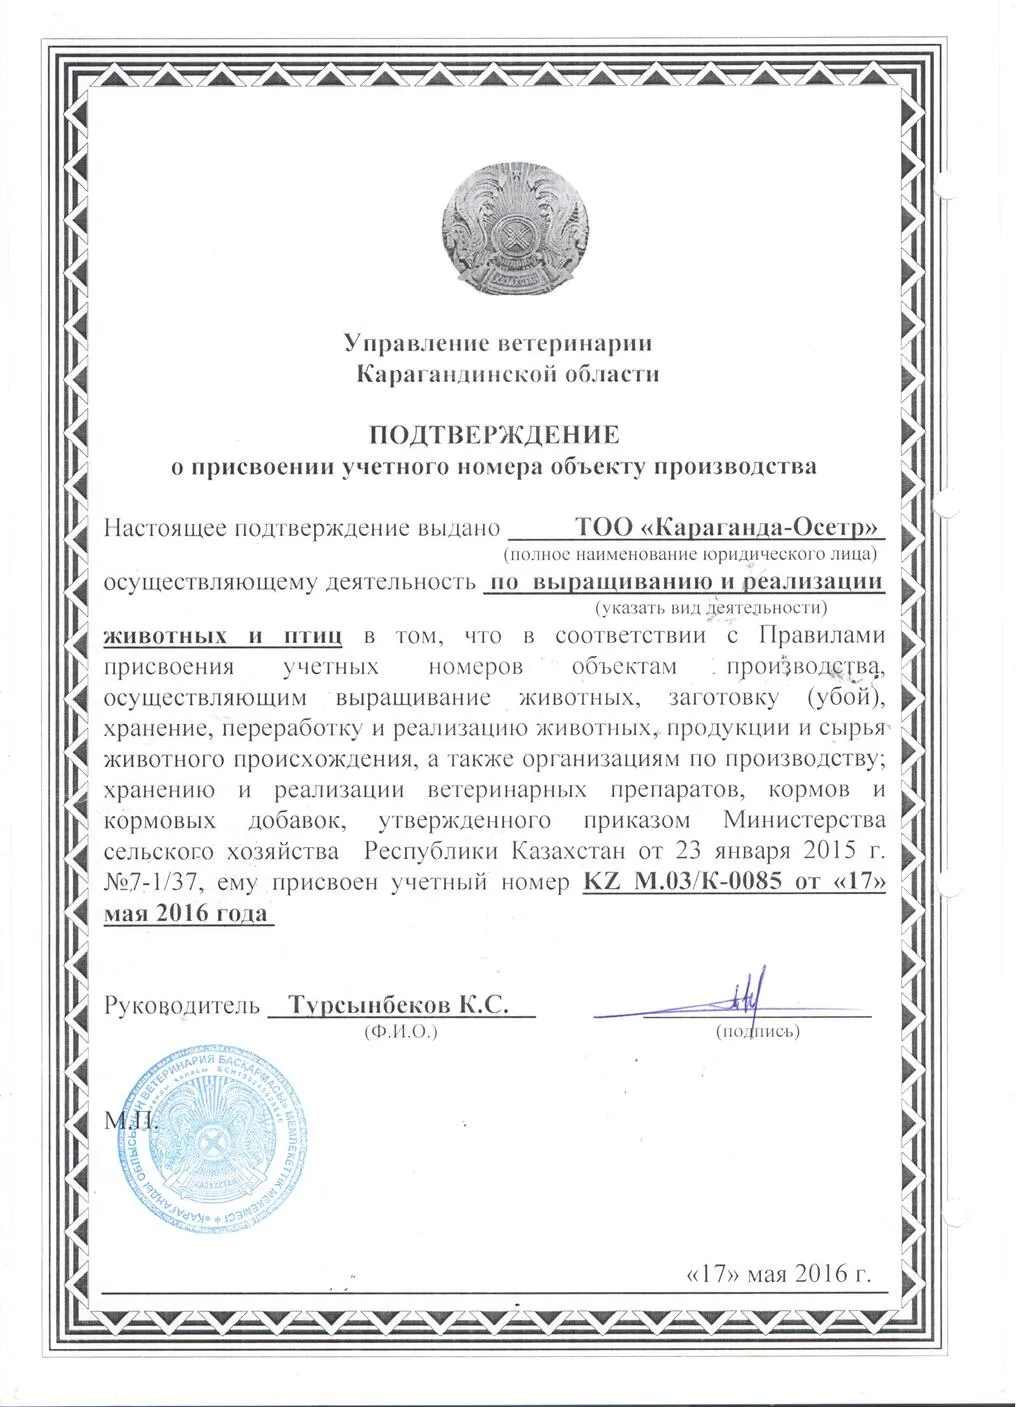 гибрид Калуги, стерляди, ленского осетра в Казахстане 3